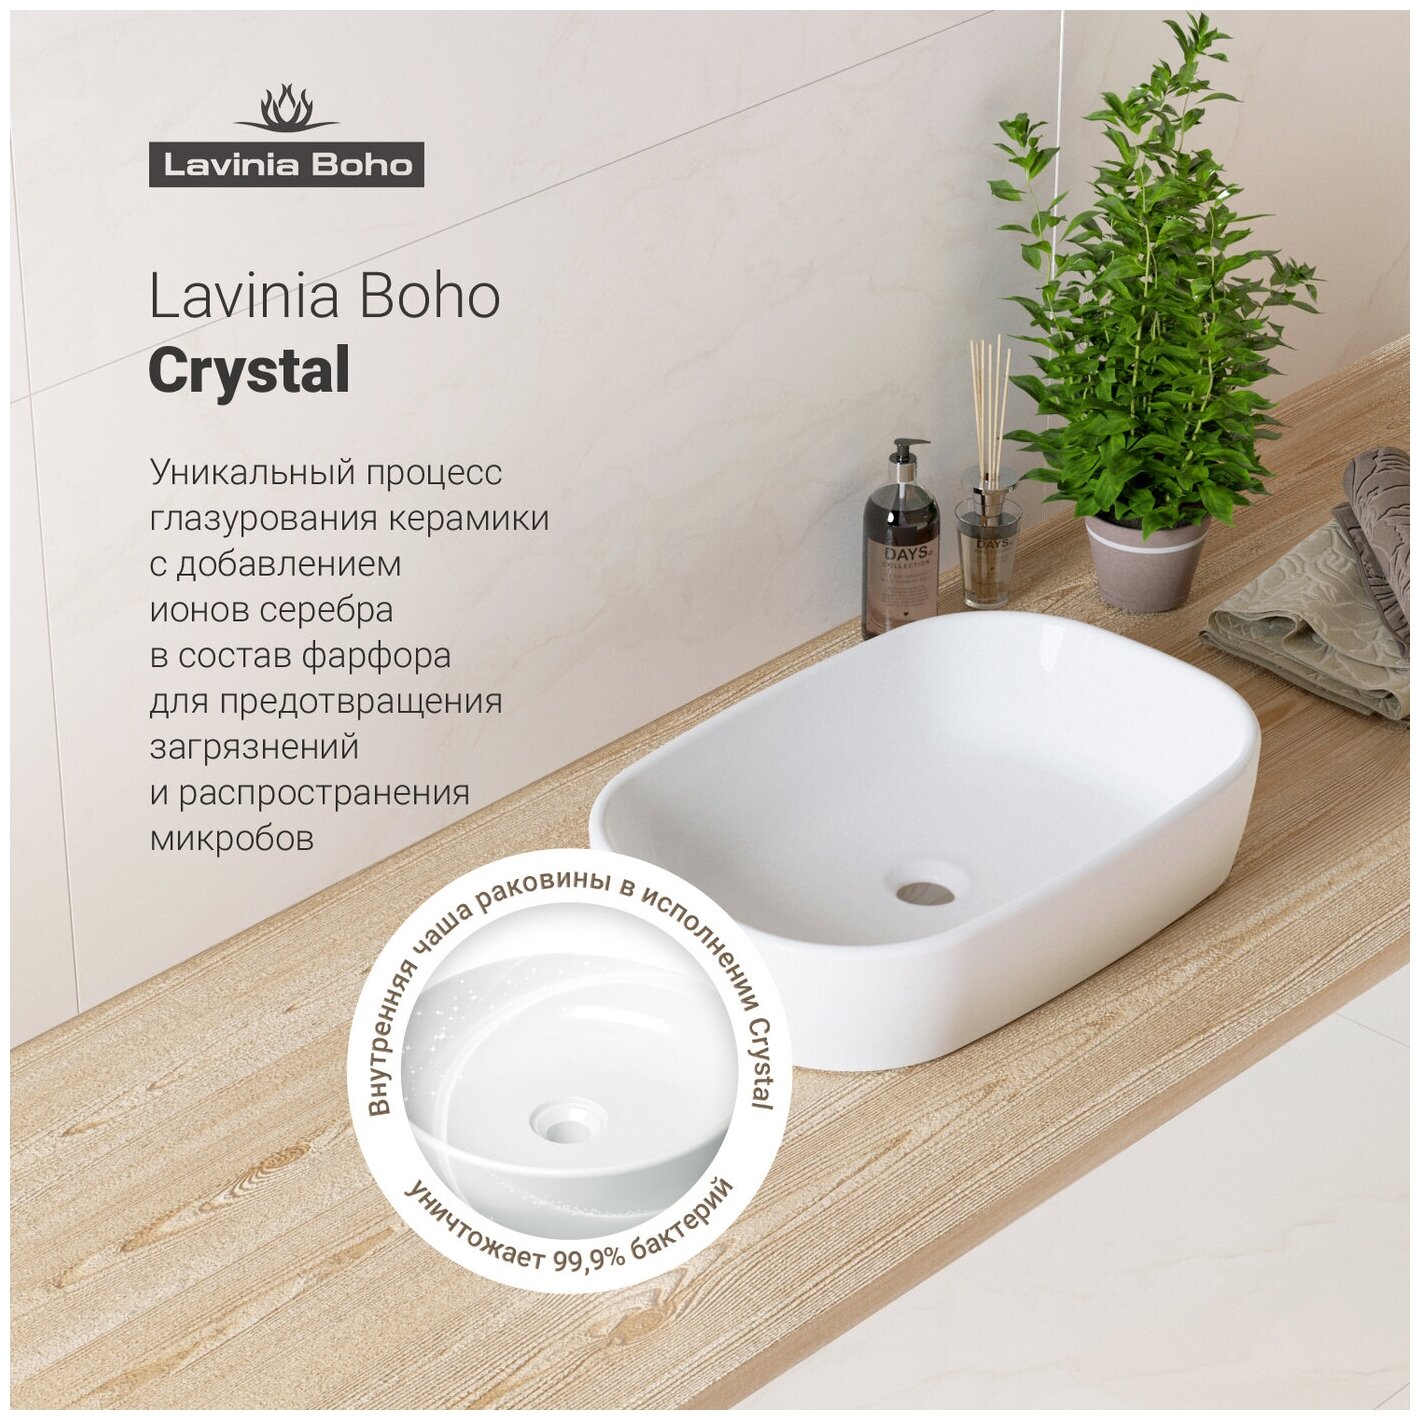 Комплект 3 в 1 Lavinia Boho Bathroom Sink 21520047: накладная фарфоровая раковина 54 см, металлический сифон, донный клапан - фотография № 4